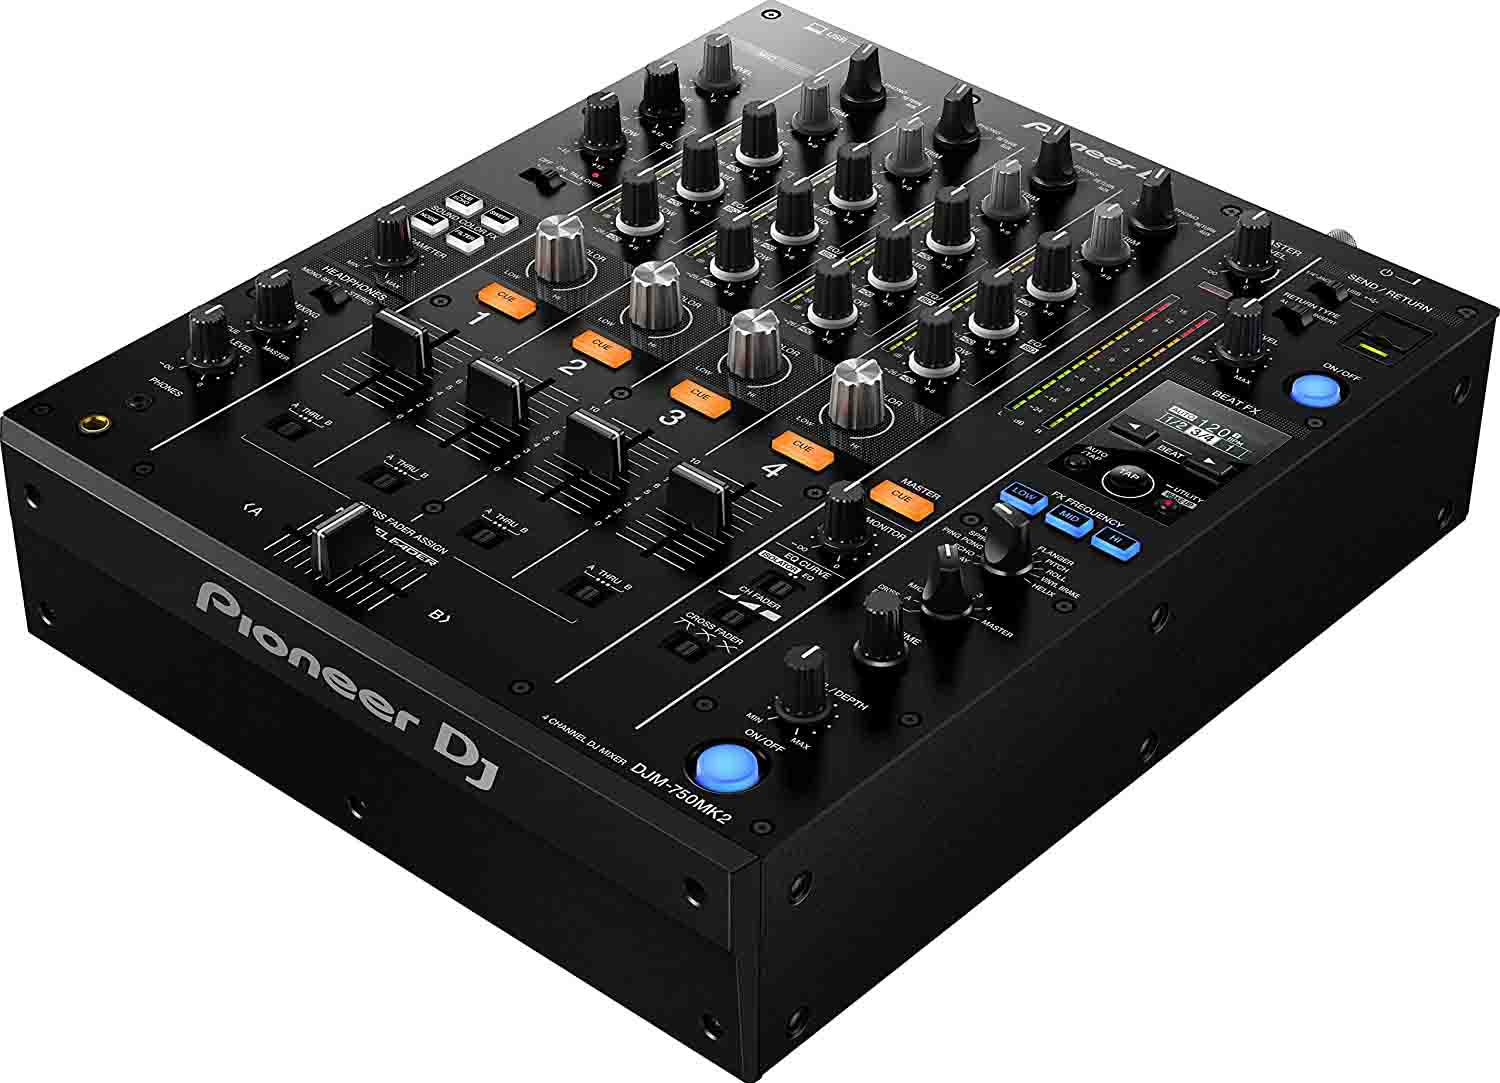 Pioneer DJ DJM-750MK2 4-channel DJ Mixer - Hollywood DJ